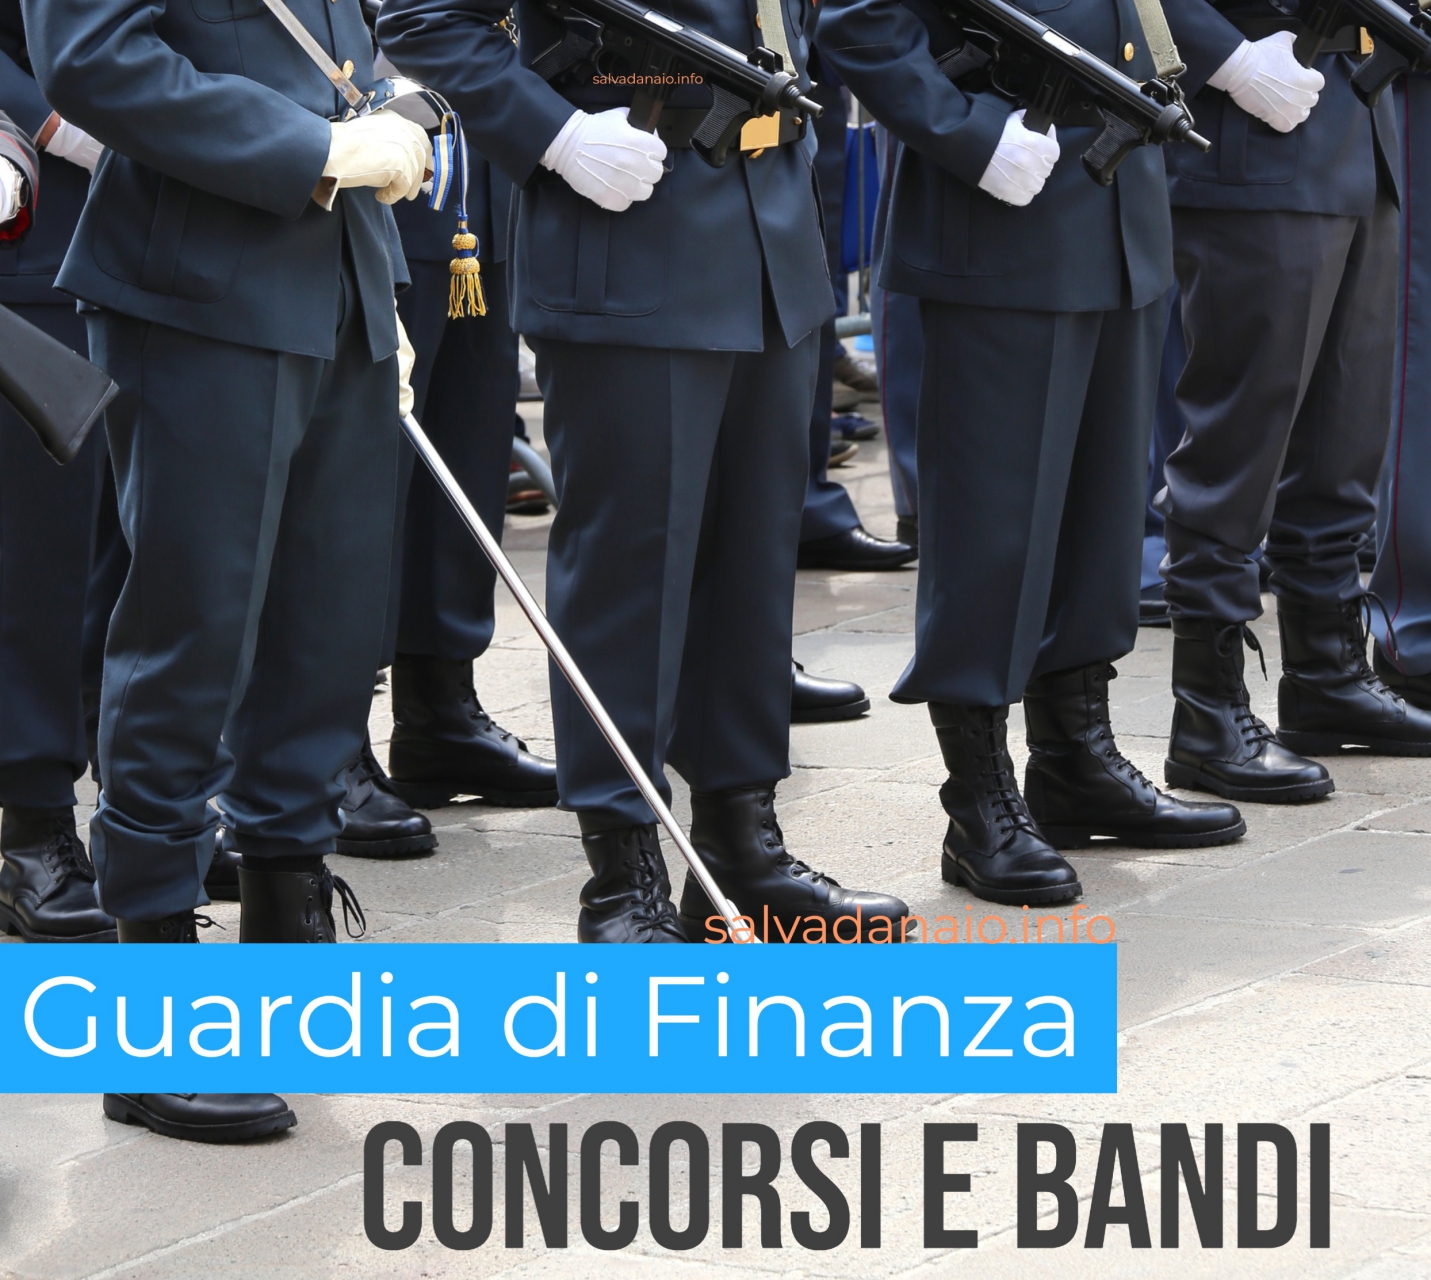 Guardia di finanza italiana, cosa fare per partecipare e superare il concorso?